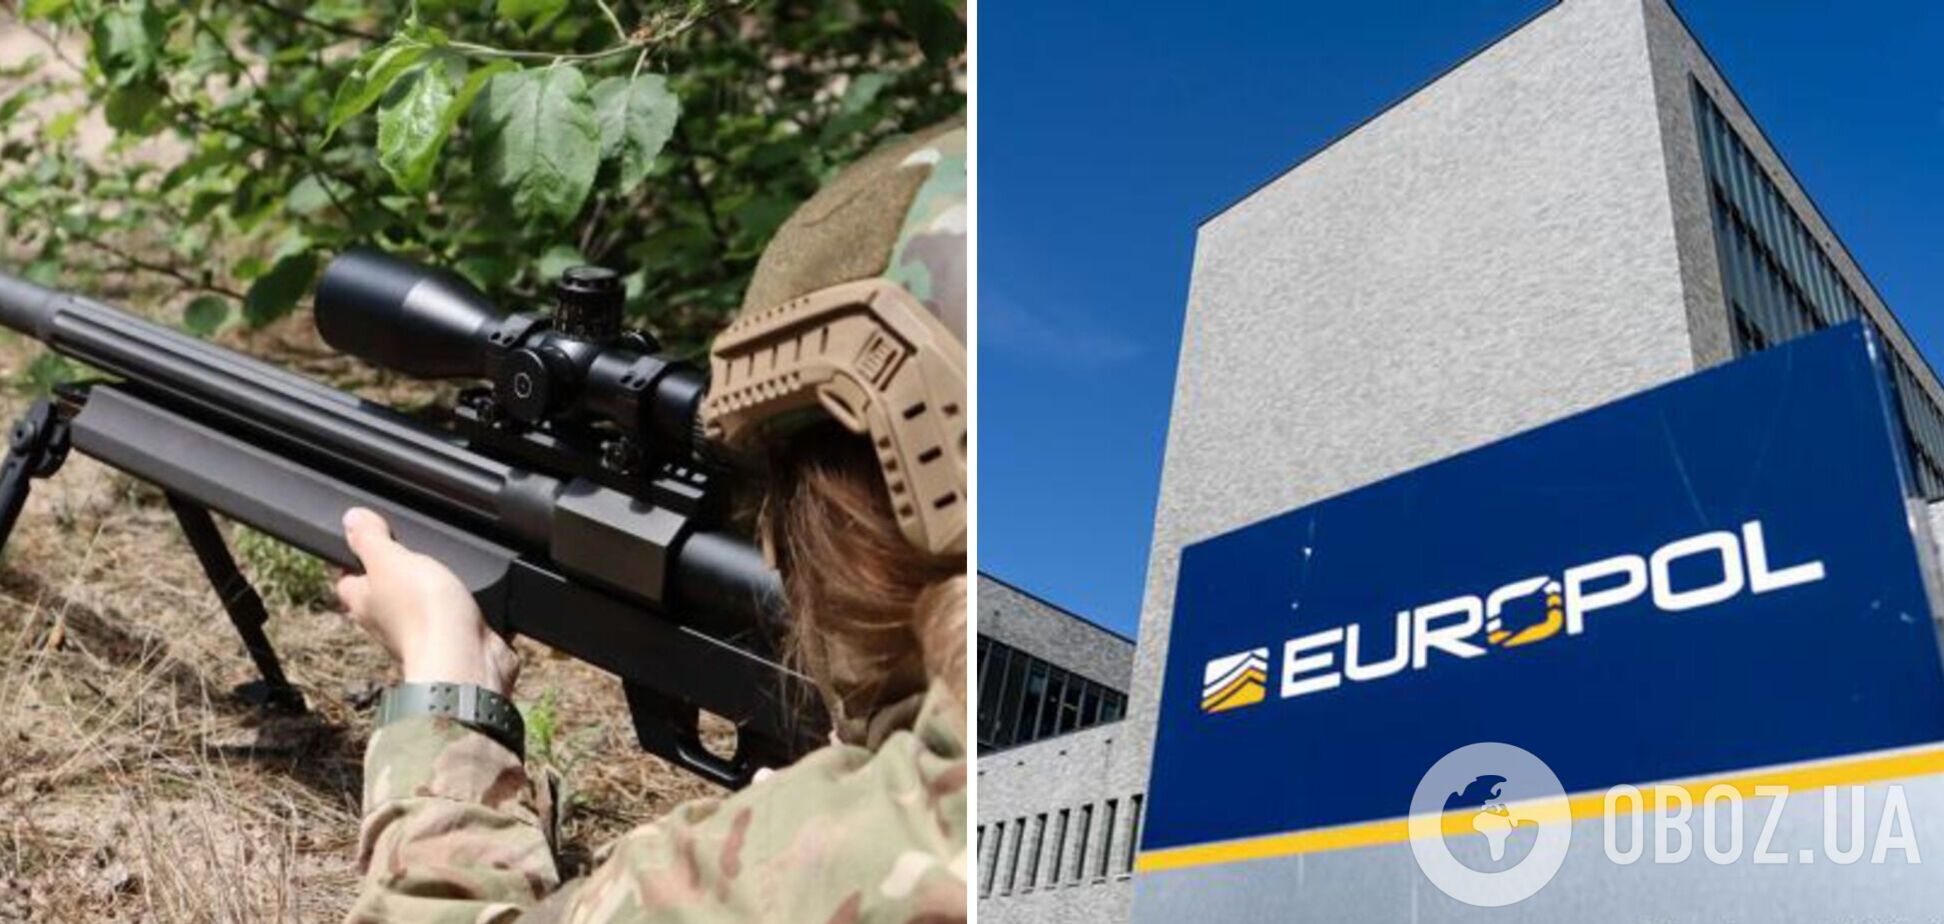 Європол офіційно спростував 'контрабанду зброї' з України: повністю довіряємо українській владі